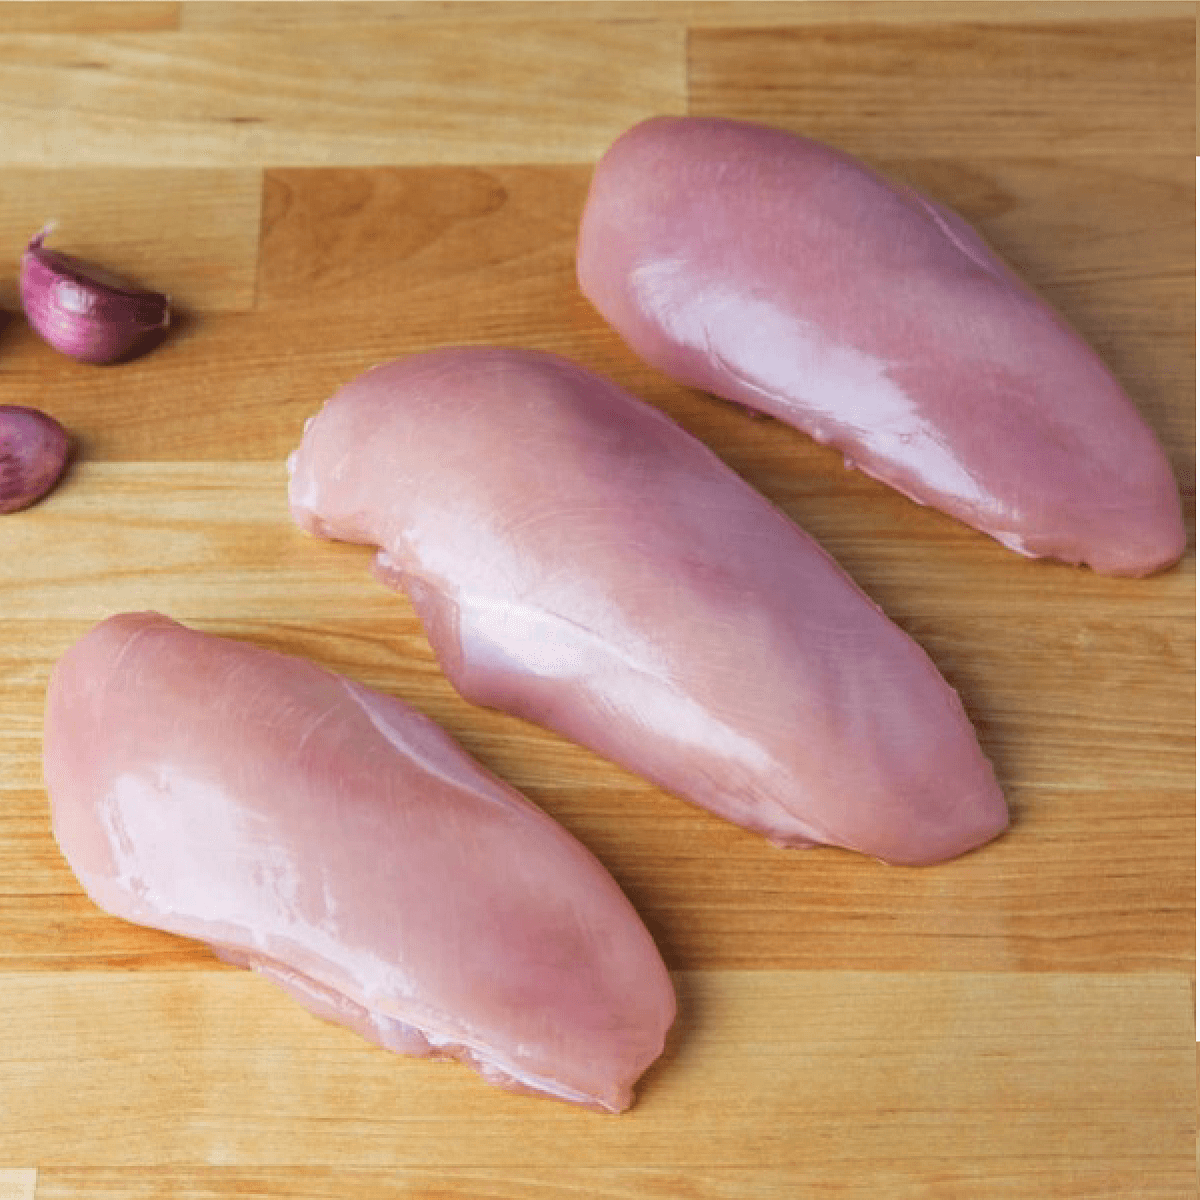 SSC Chicken Breast Filet 1.25 - 1.75 lb